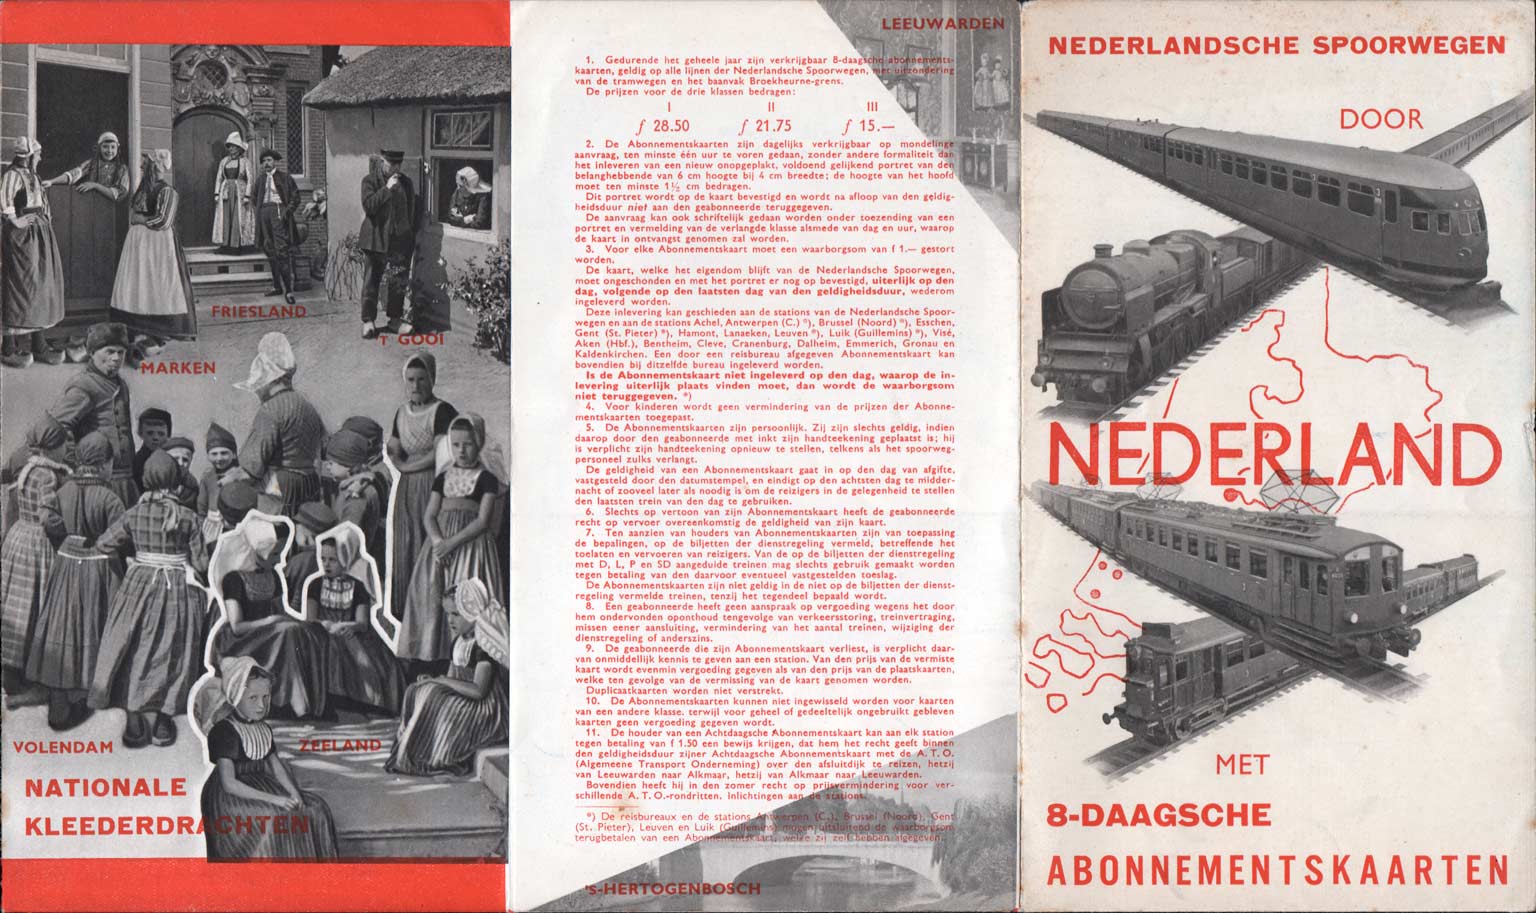 Voorzijde folder 8-daagsche abonnementskaarten NS, Beatrice van Leusden, 1935 (coll. Arjan den Boer)